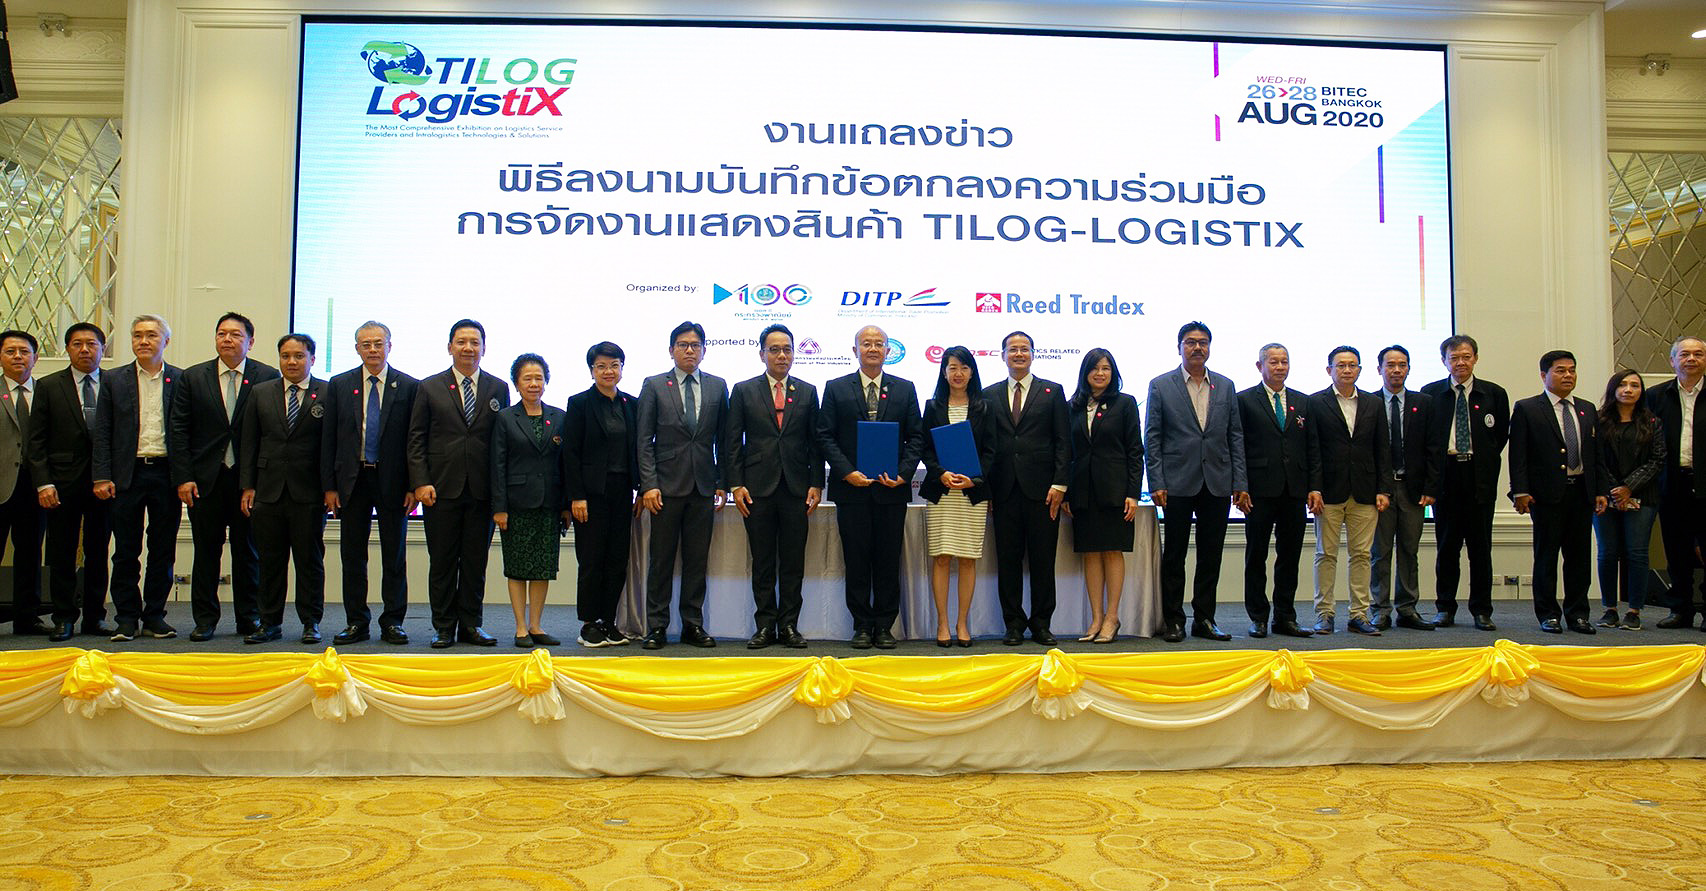 DITP จับมือ รี้ด เทรดเด็กซ์ จัดงานแสดงสินค้า TILOG – LOGISTIX ตอกย้ำไทยเป็นศูนย์กลางโลจิสติกส์อาเซียน